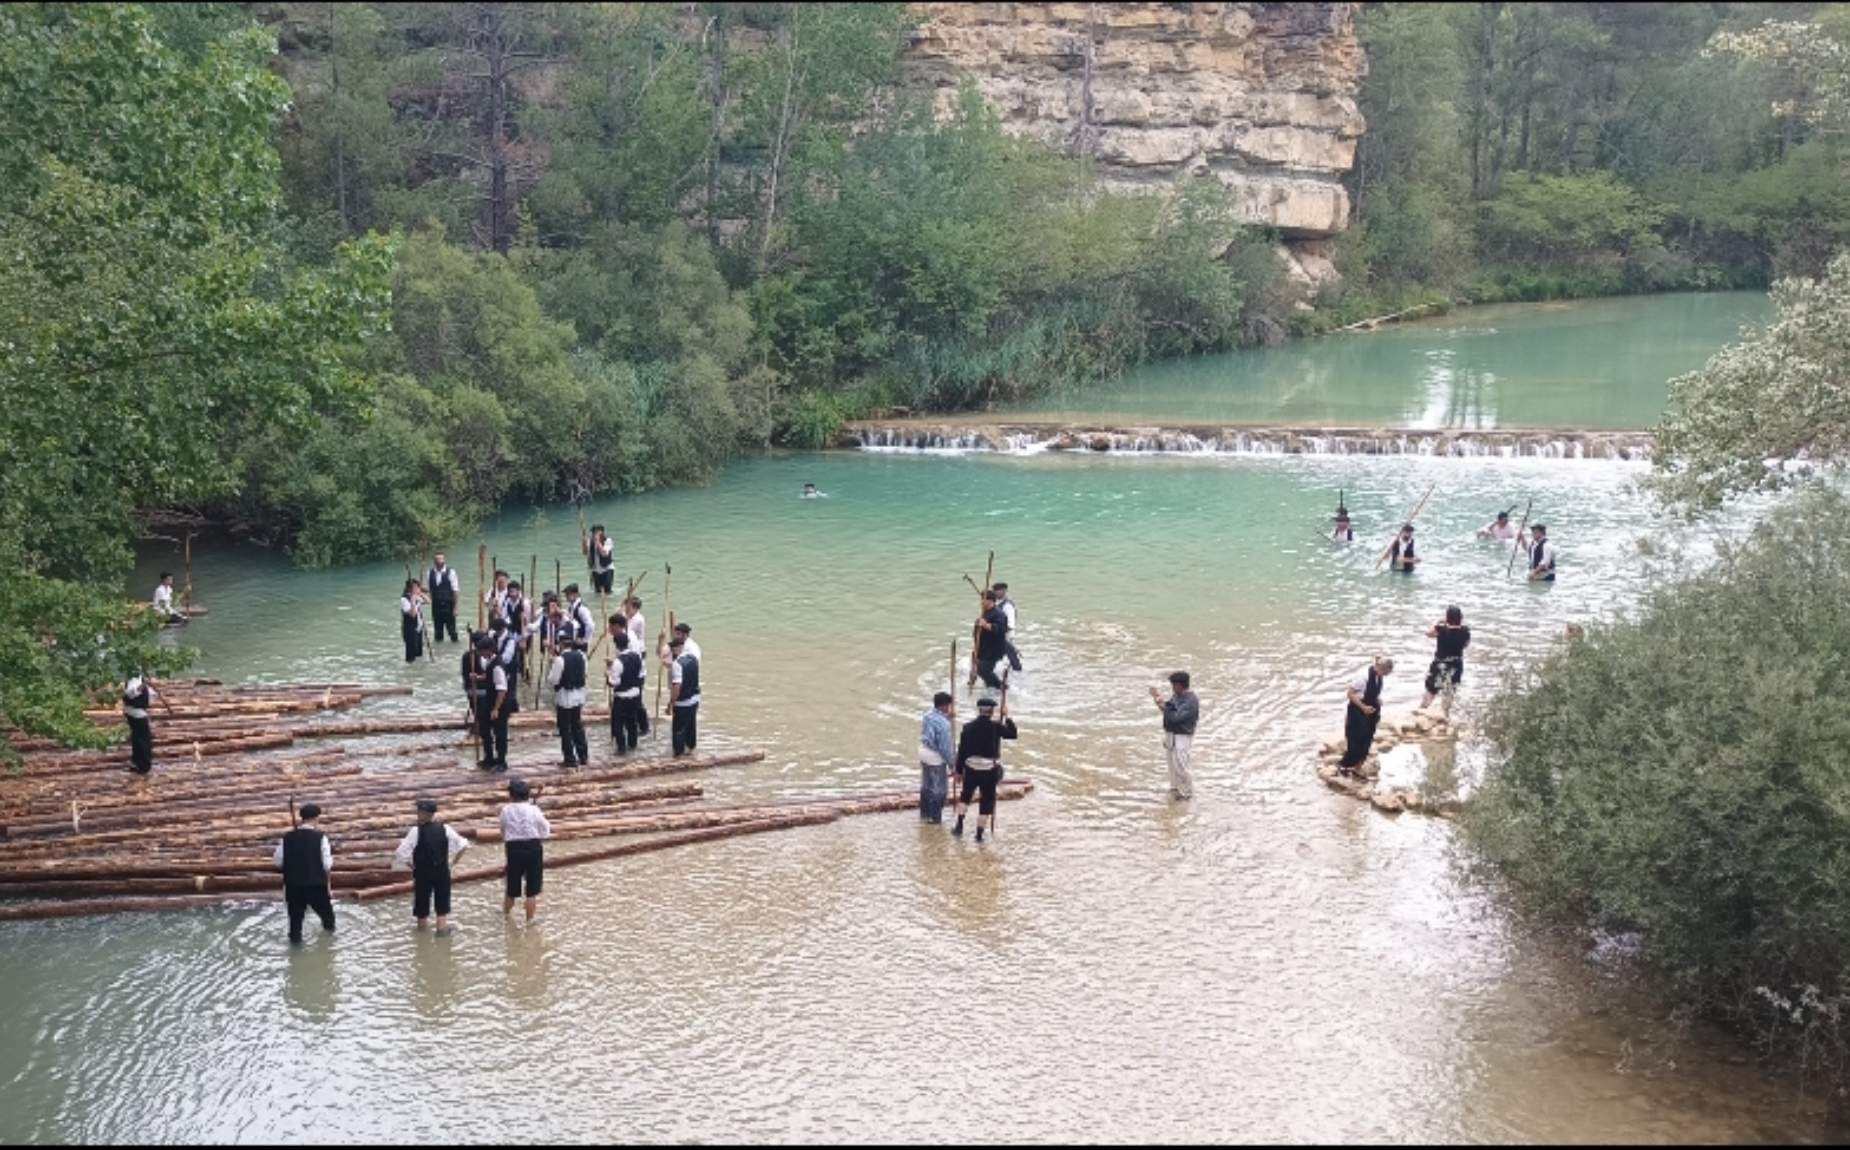 Varias personas en el rio vestido con trajes t&iacute;picos